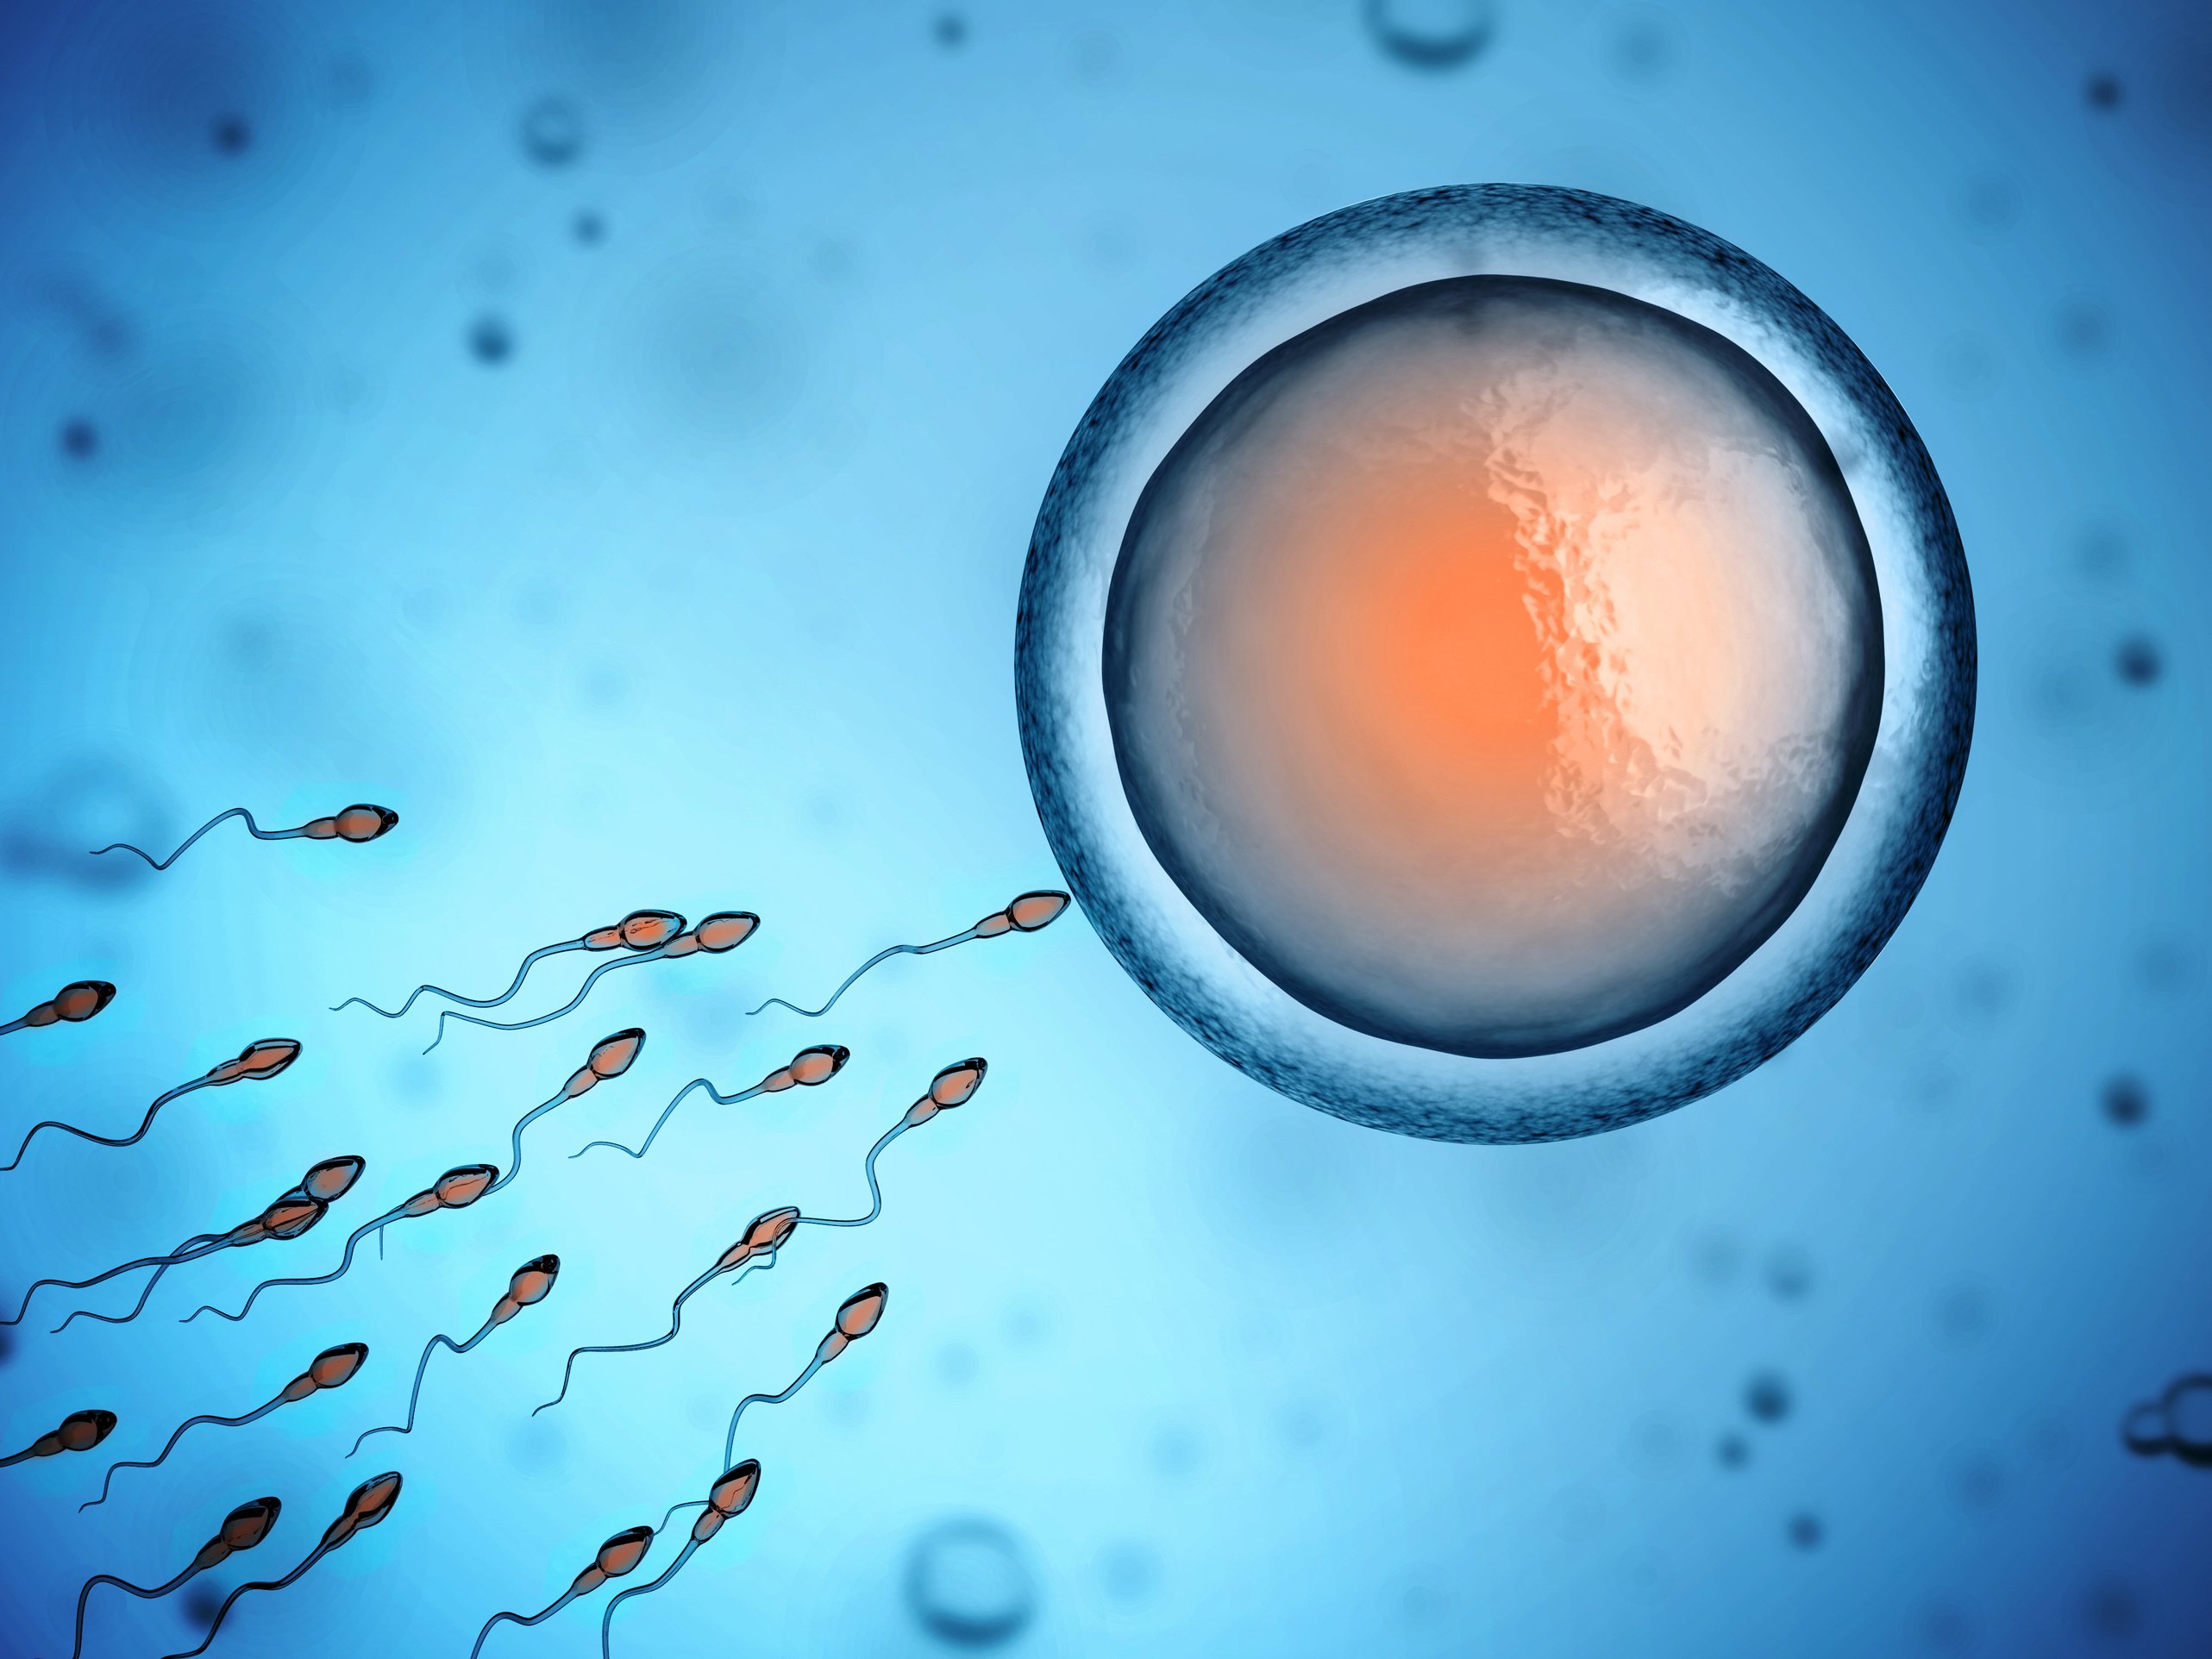 Sperm fertilising an egg cell